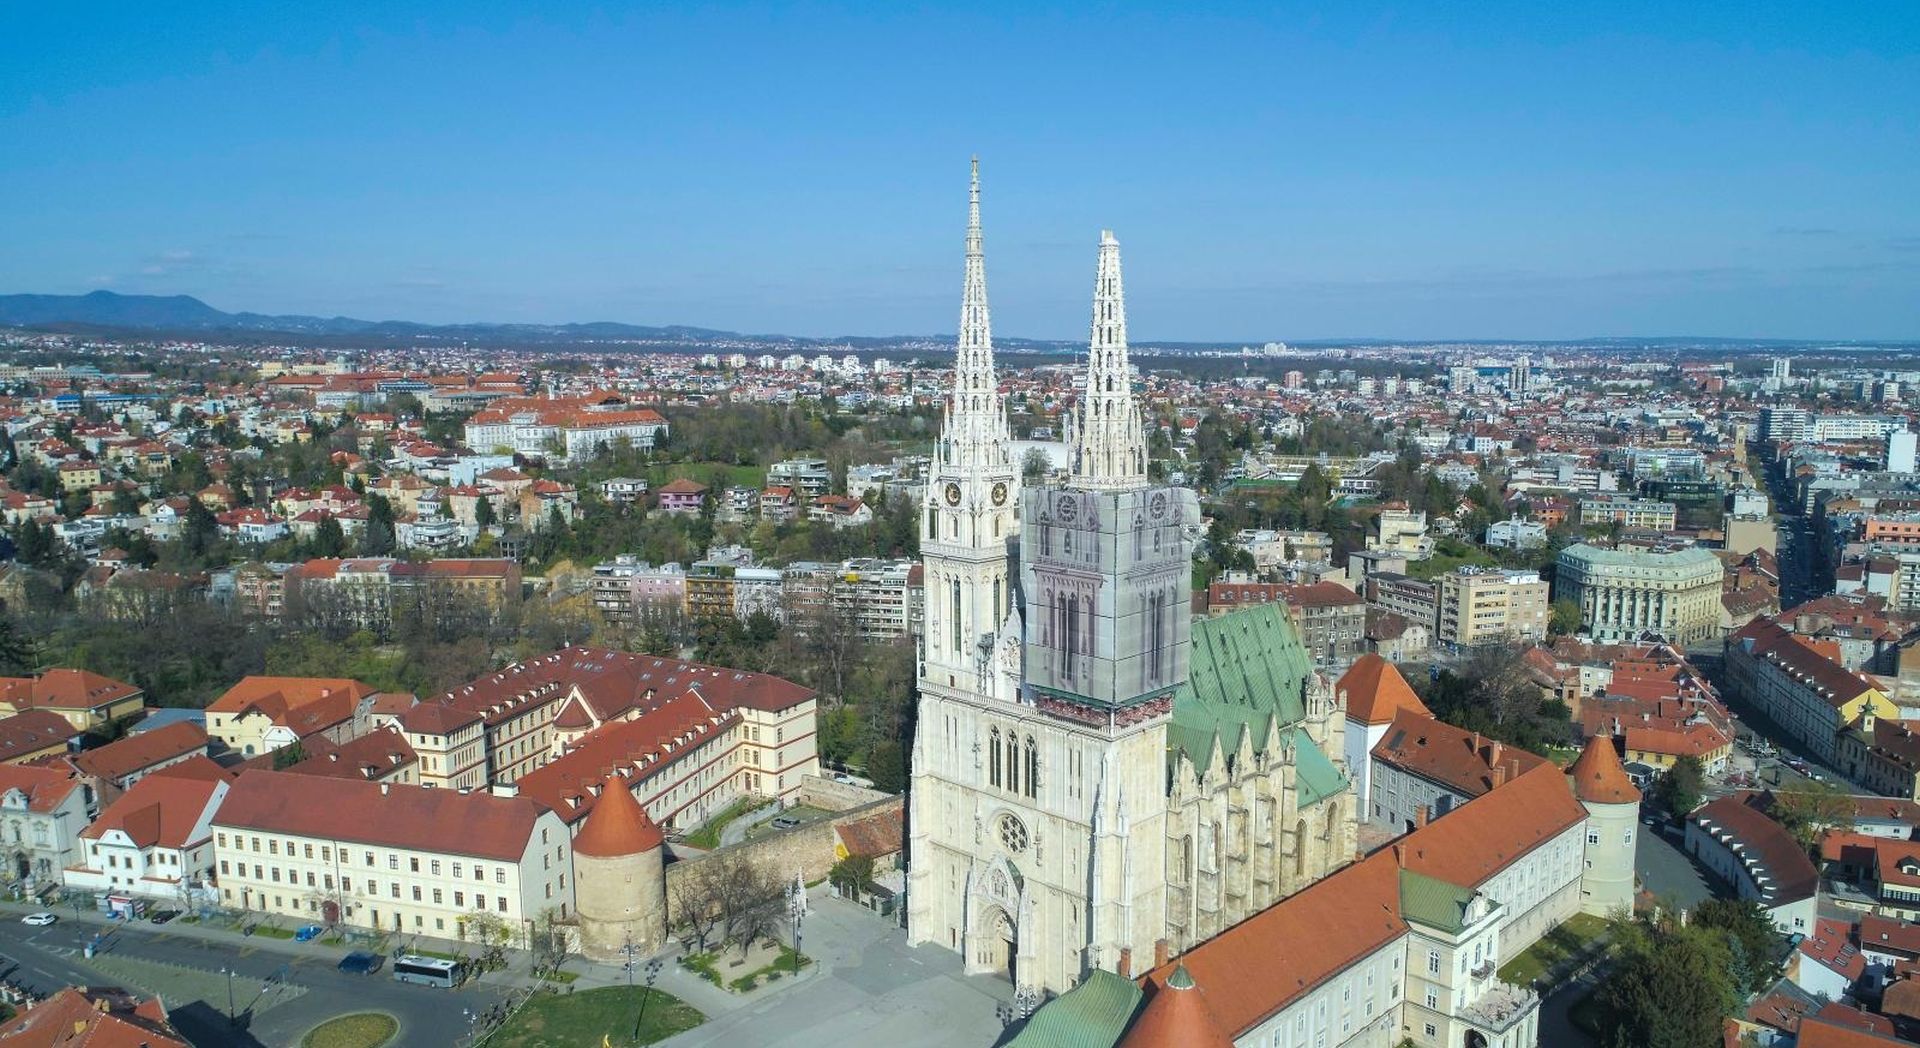 22.03.2020., Zagreb - Fotografija katedrale iz zraka nakon potresa 22. ozujka 2020. u kojemu je ostecen desni toranj i kriz. Photo: PIXSELL